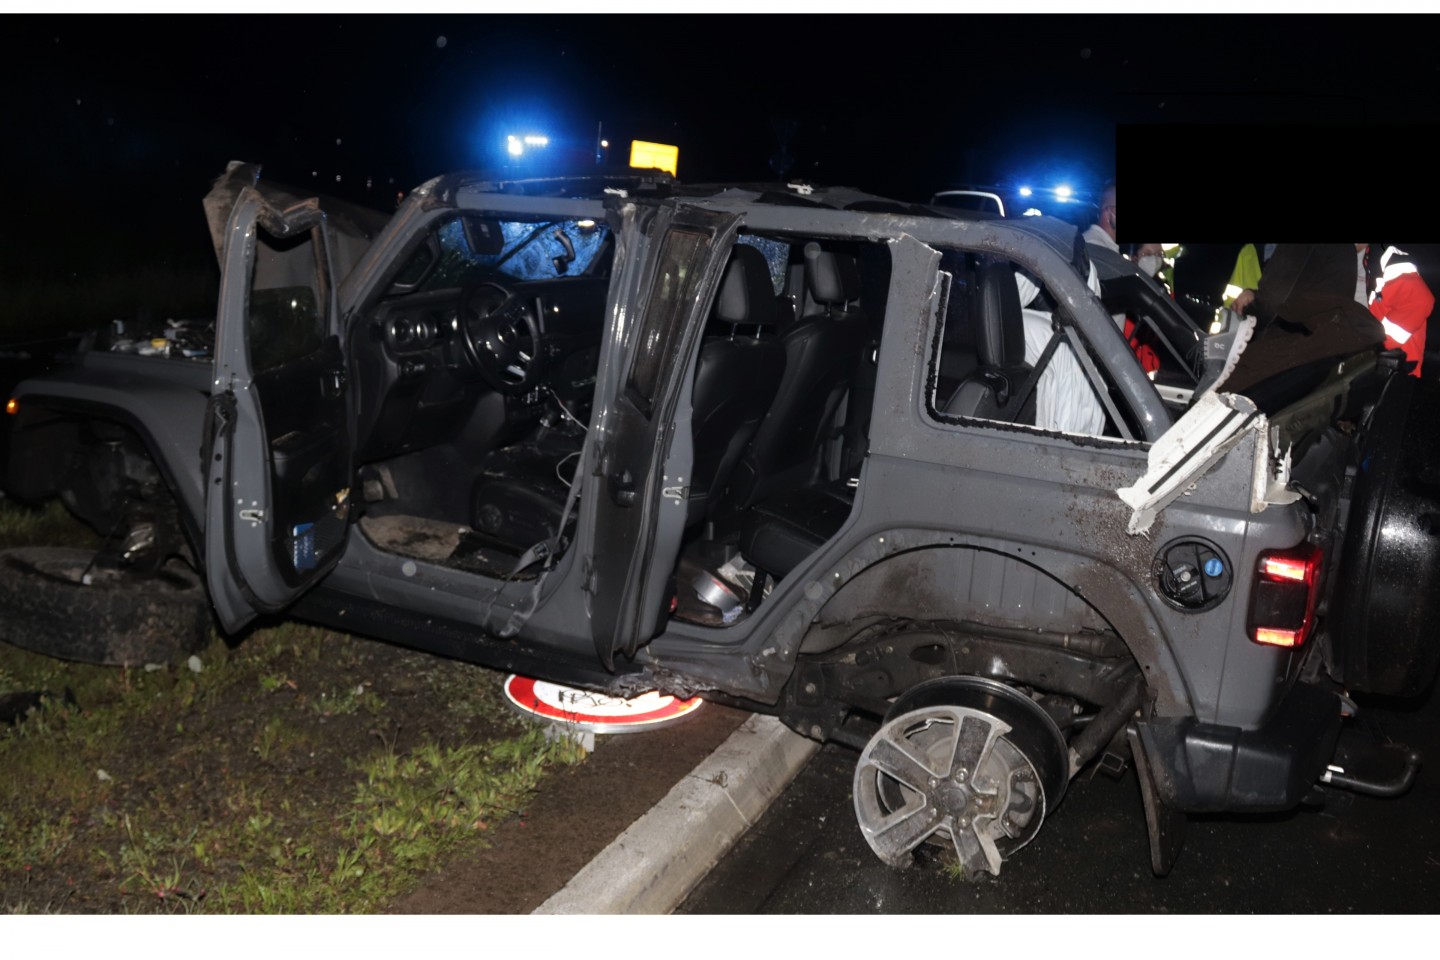 POL-HX: Auto überschlägt sich mehrfach, zwei Verletzte